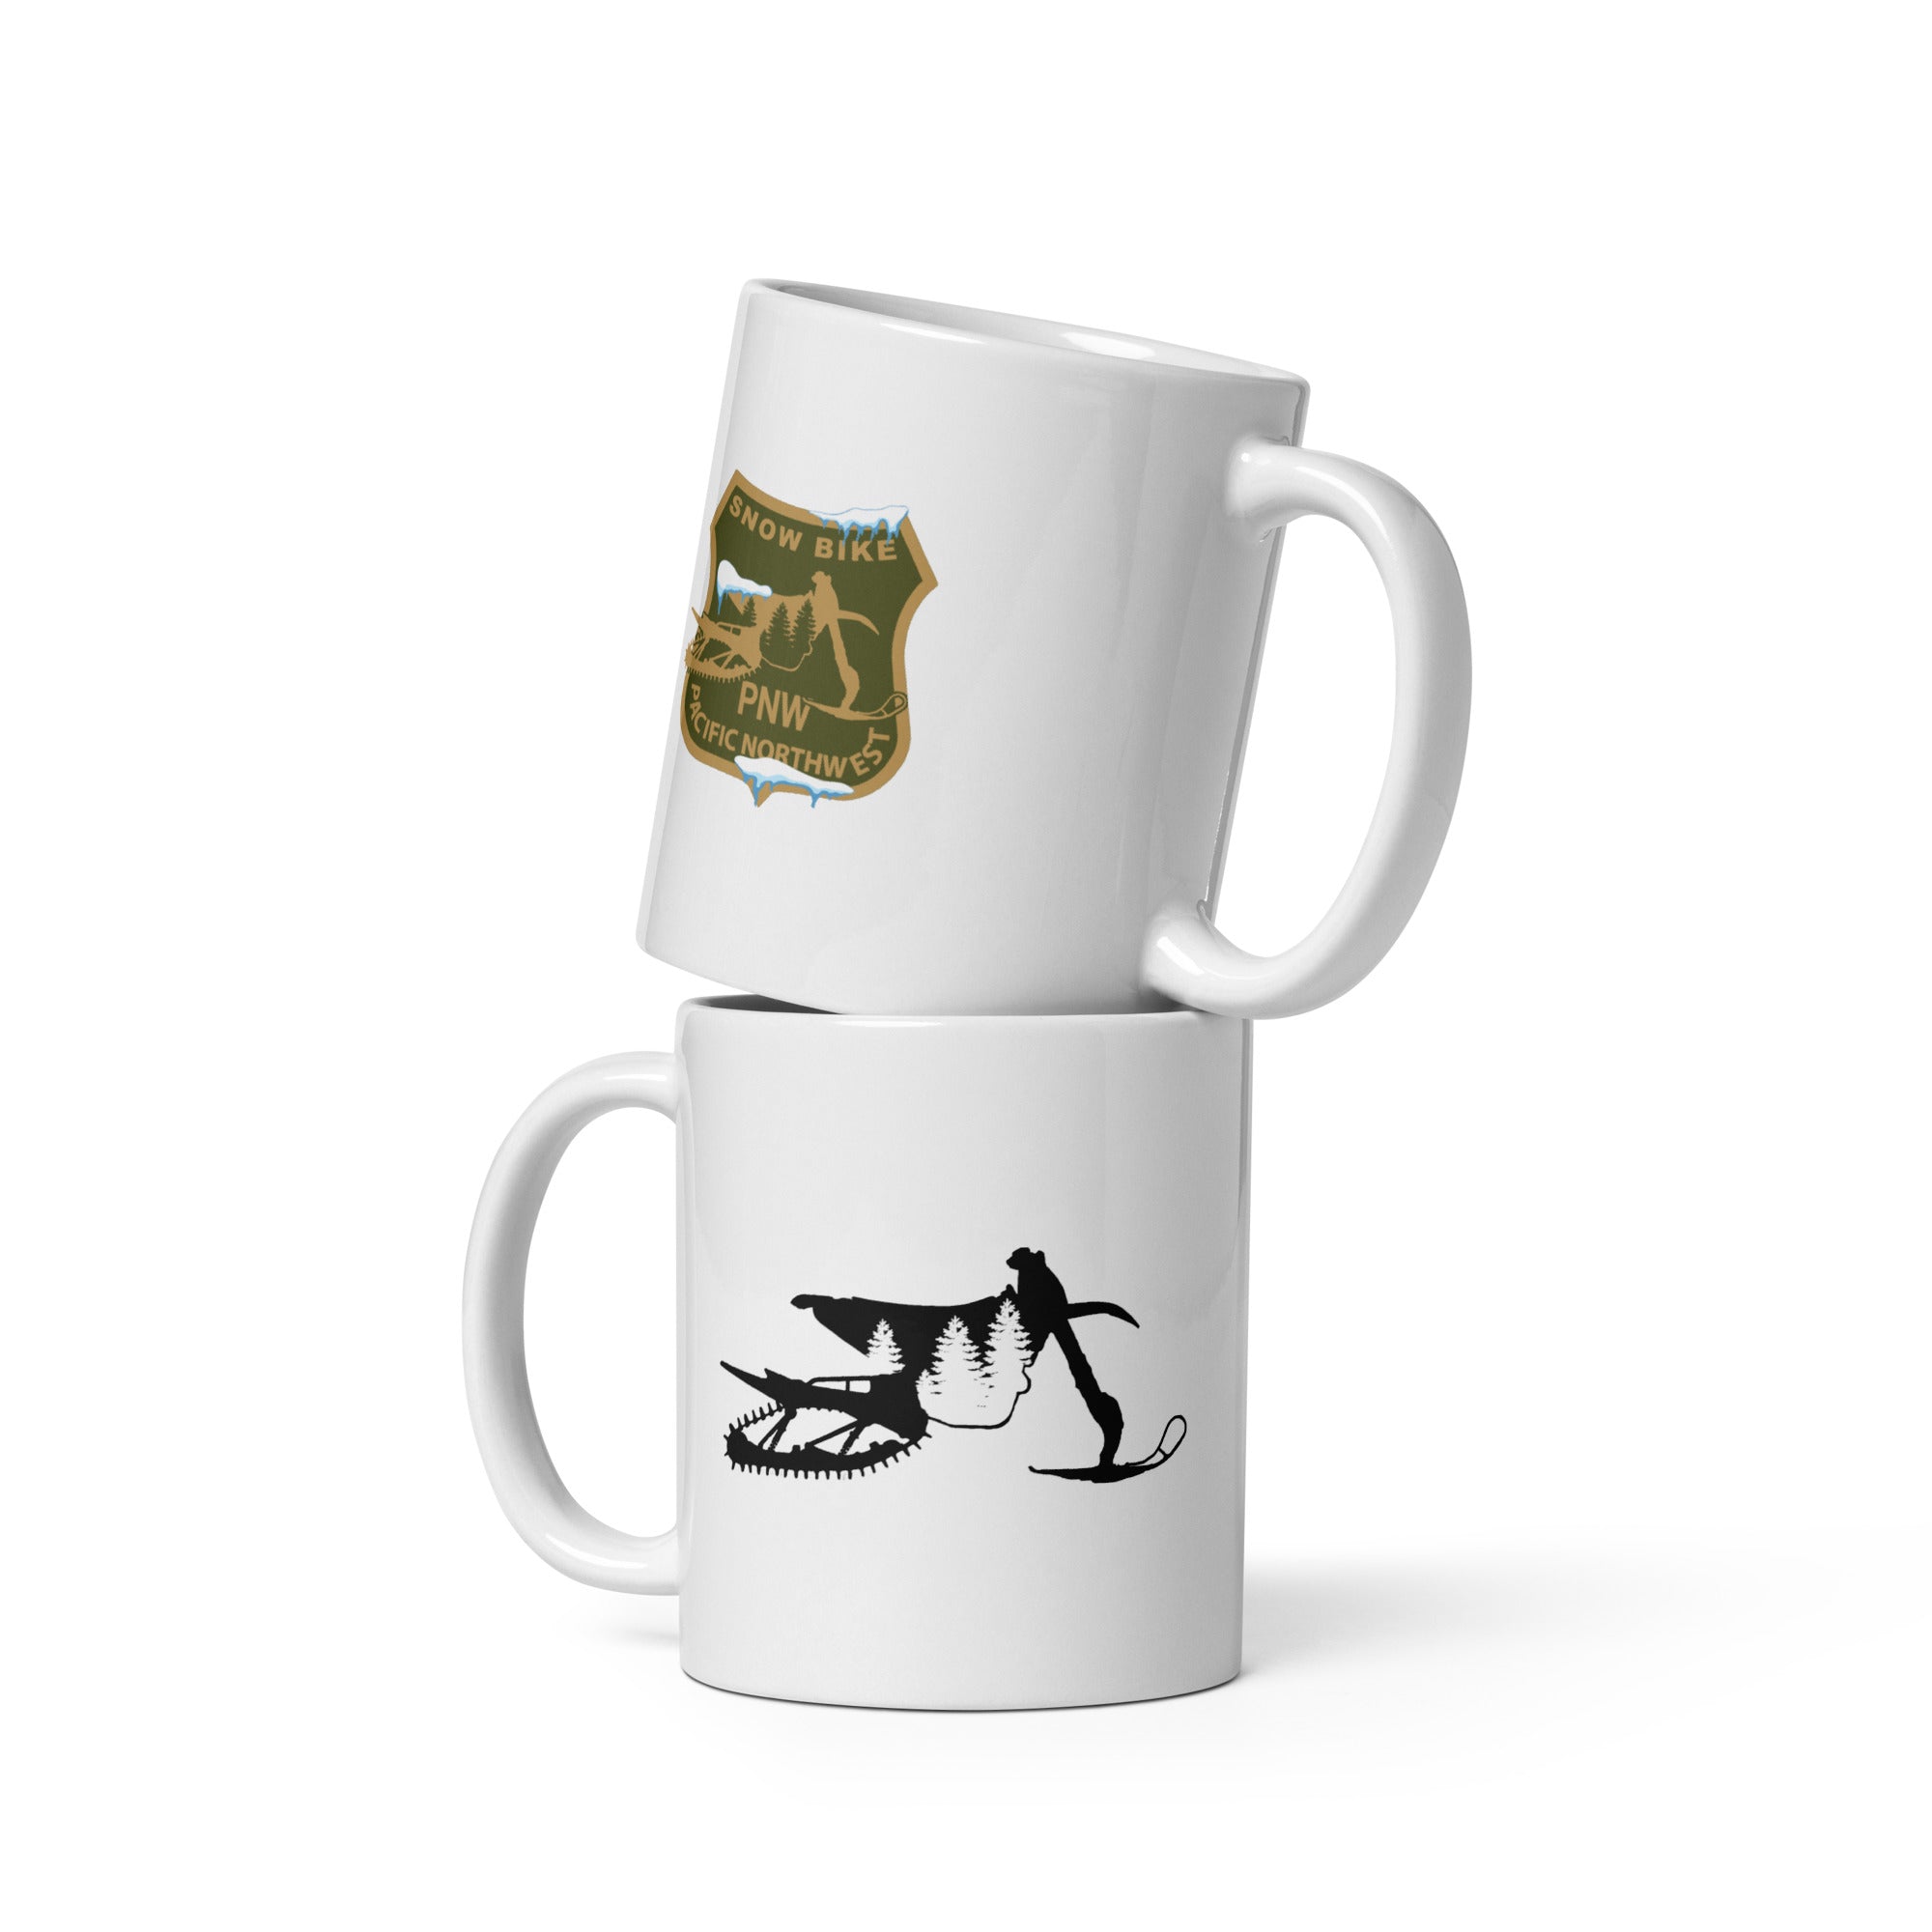 SnowBike Mug, Ceramic, White